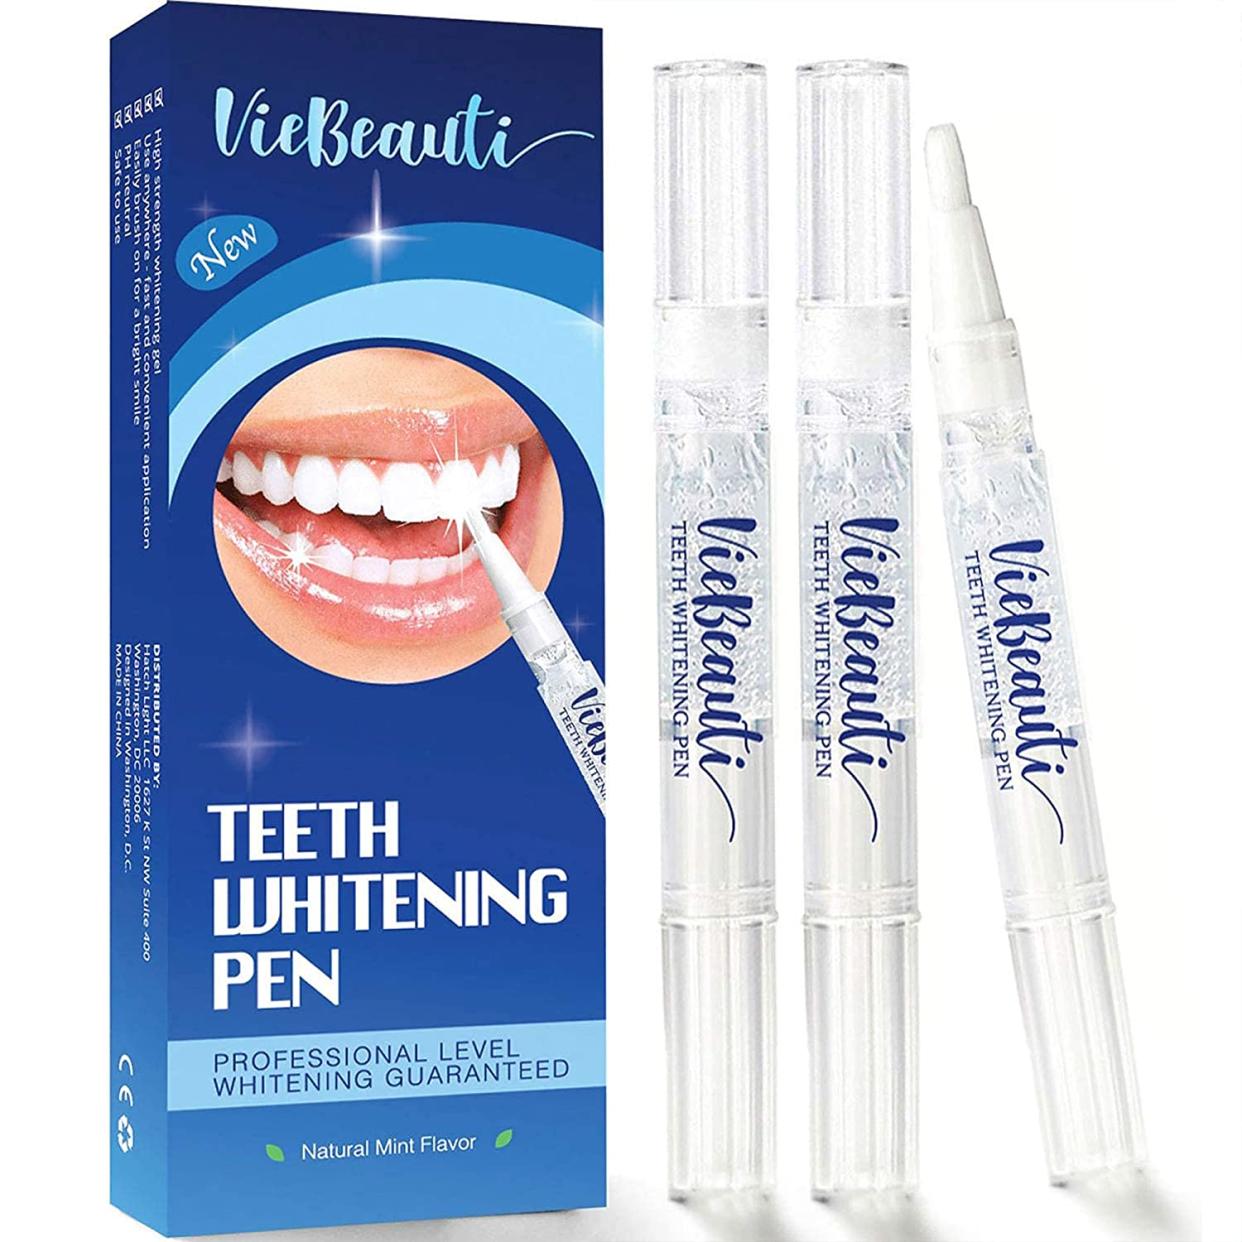 Teeth-whitening pen (Photo: Amazon)